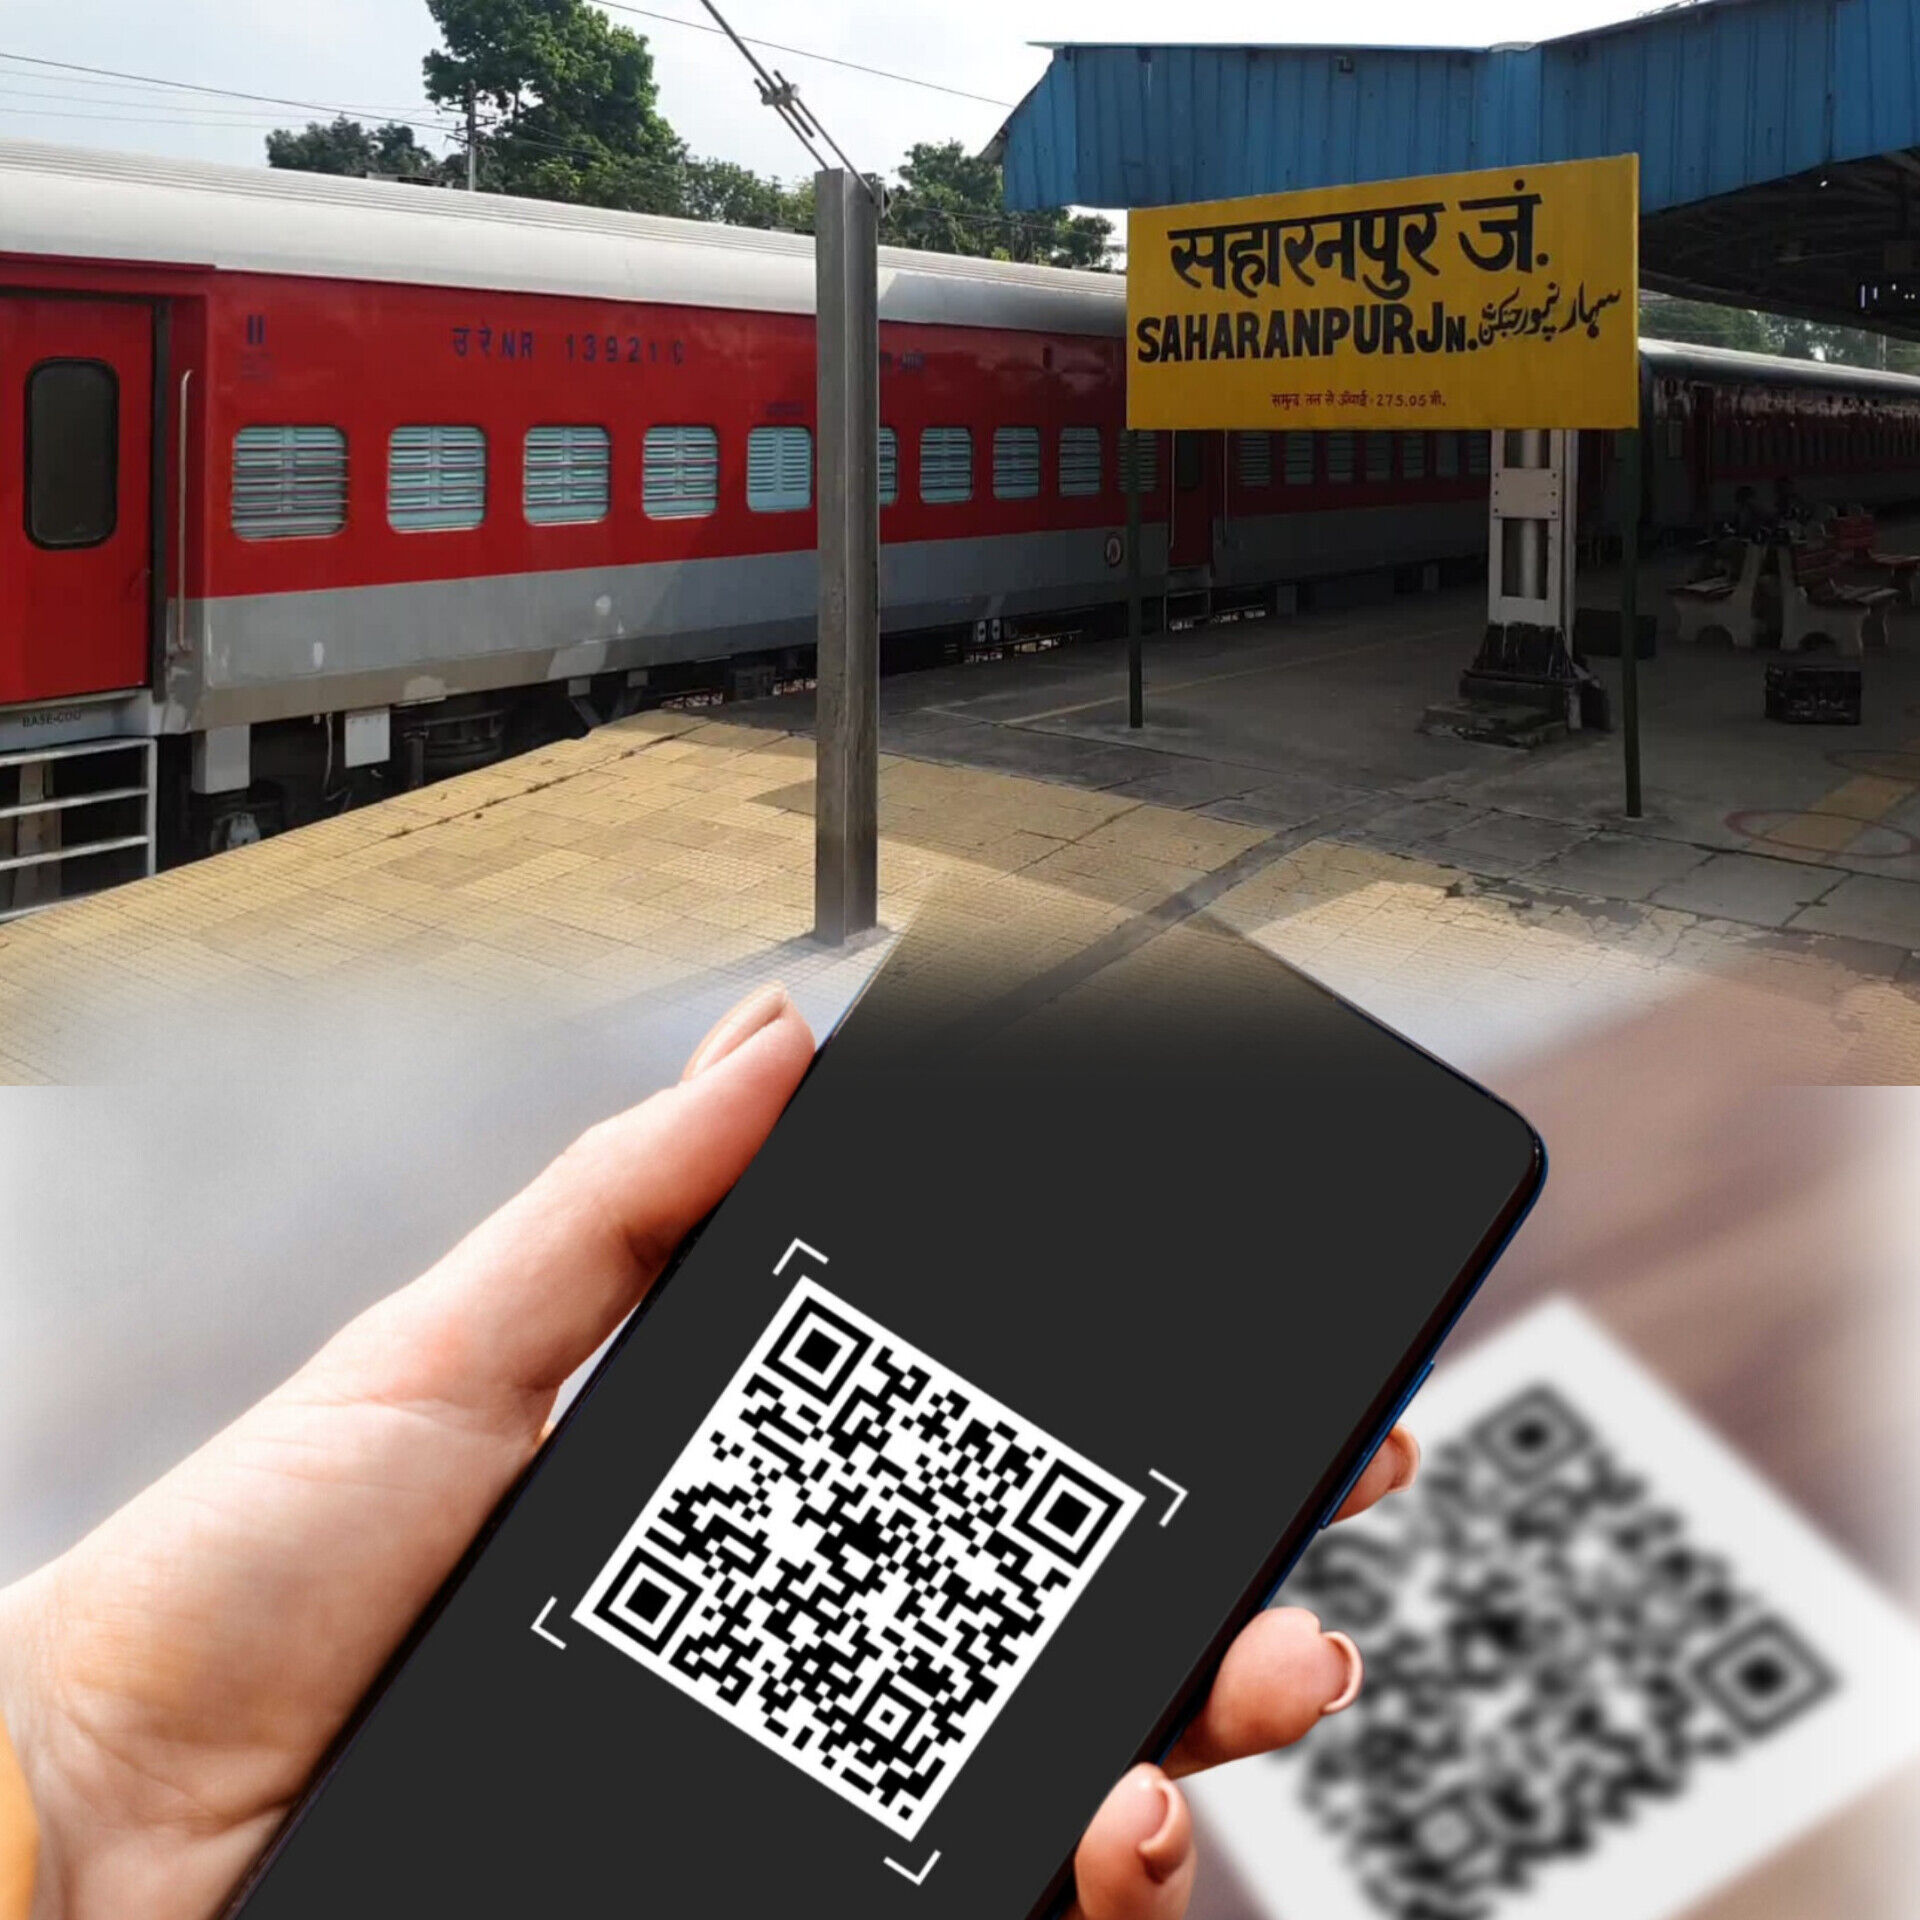 सहारनपुर रेलवे स्टेशन पर अनारक्षित टिकट के लिए QR Code से भुगतान शुरू, अब खुले पैसे का झंझट खत्म